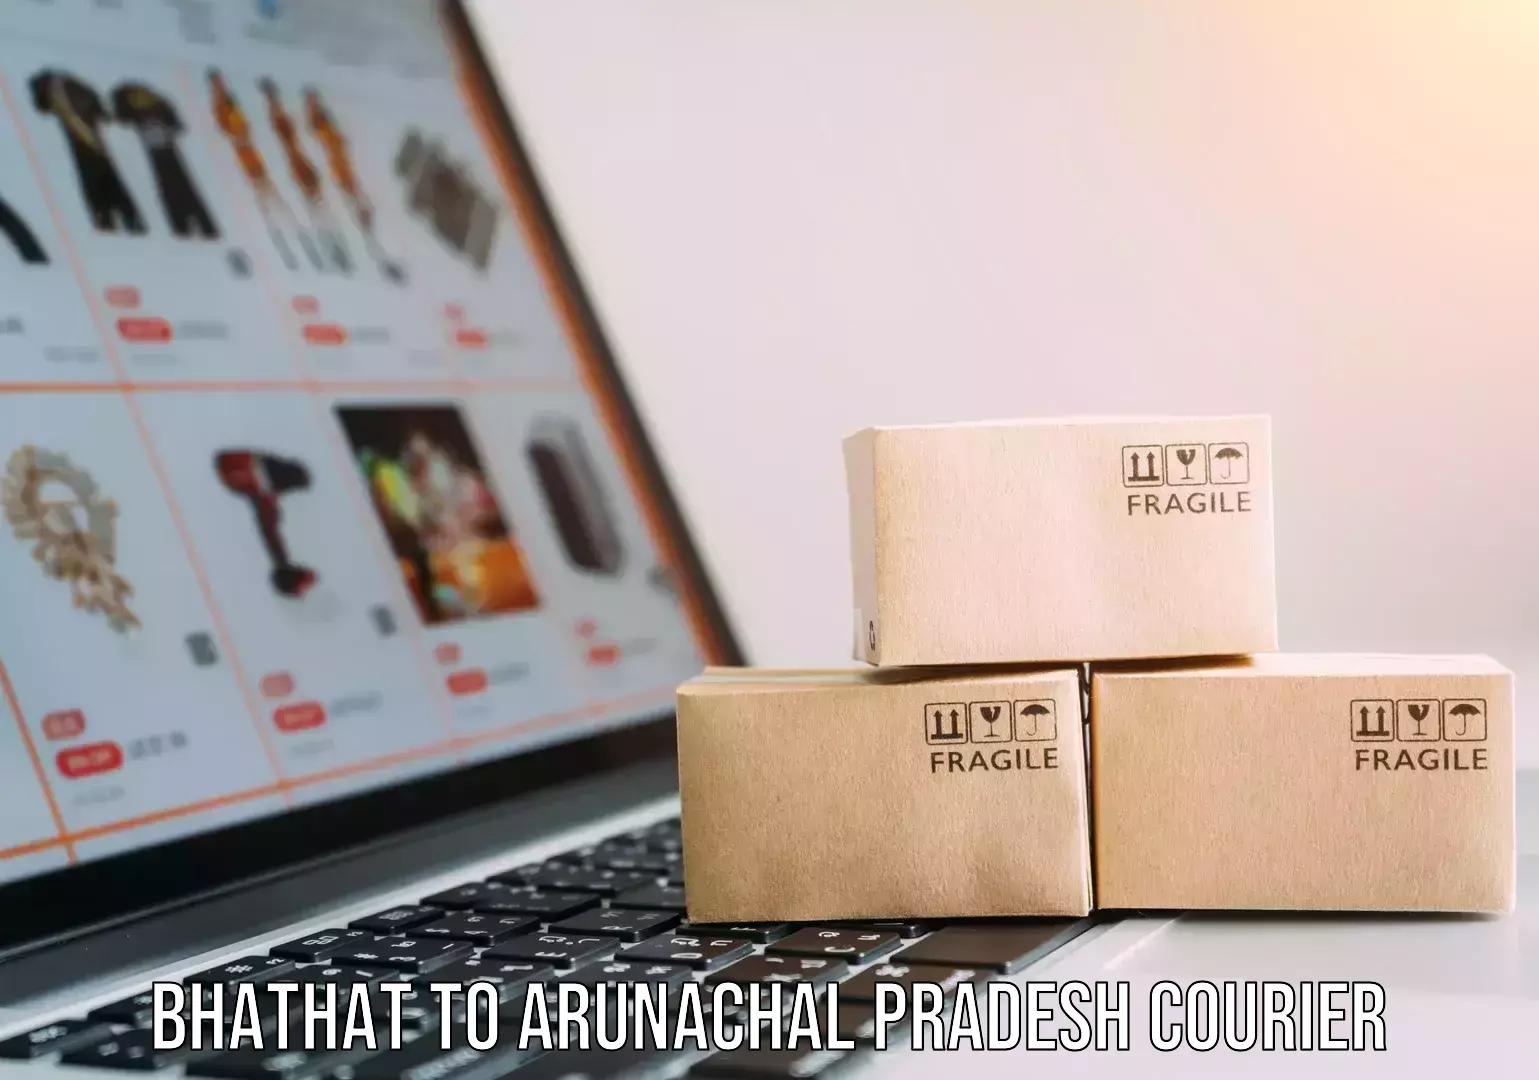 Premium courier services Bhathat to Arunachal Pradesh